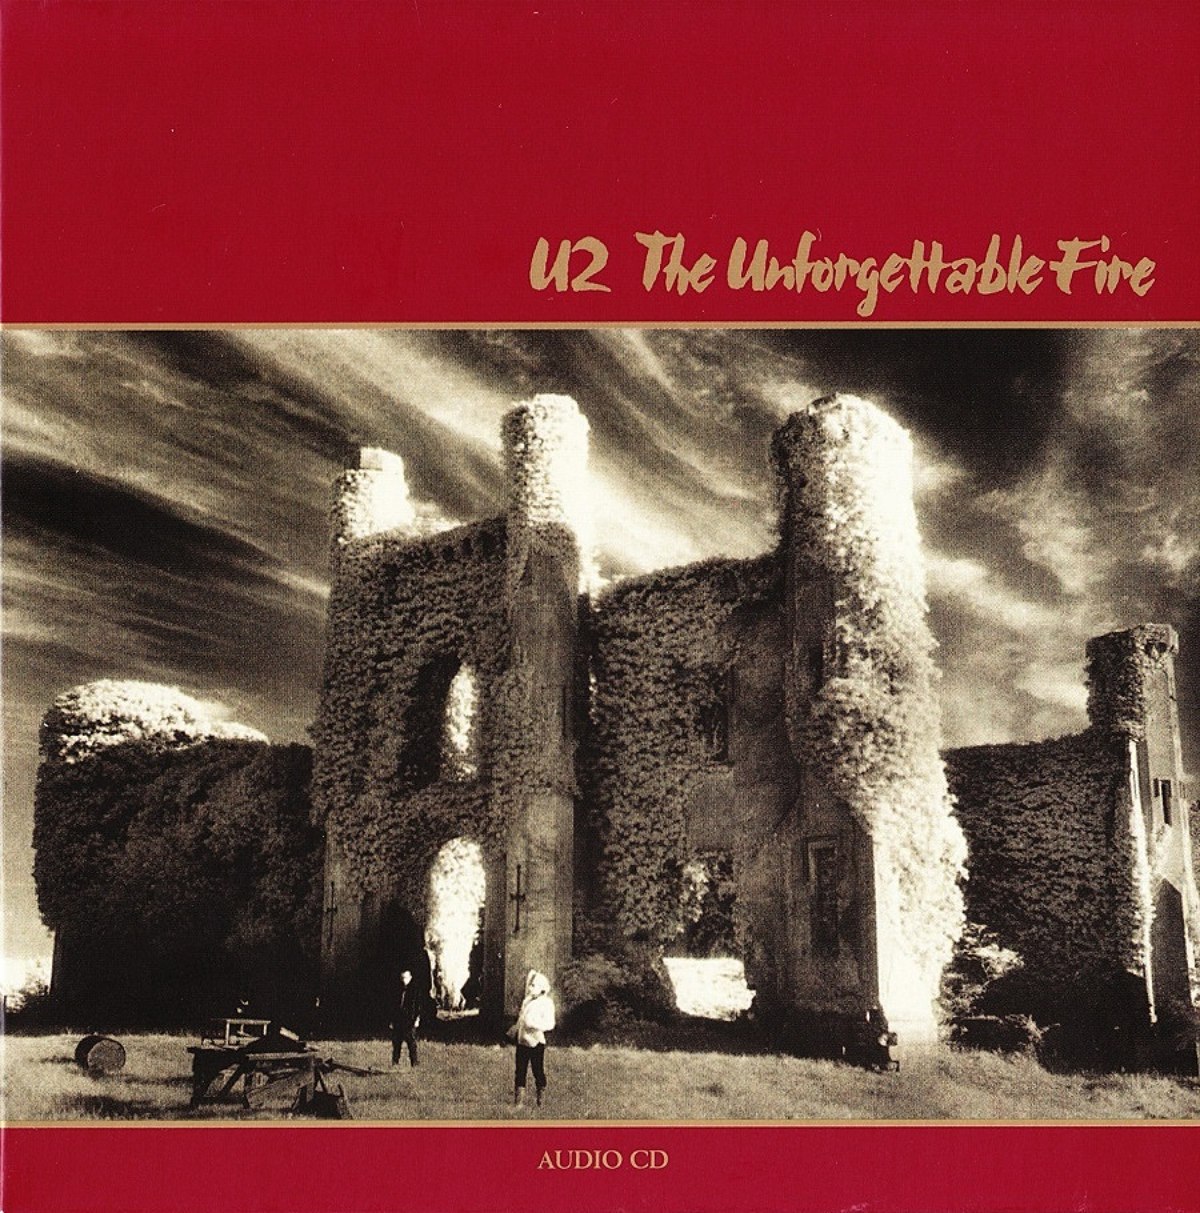 Couverture de l'album "The Unforgettable Fire" de U2.